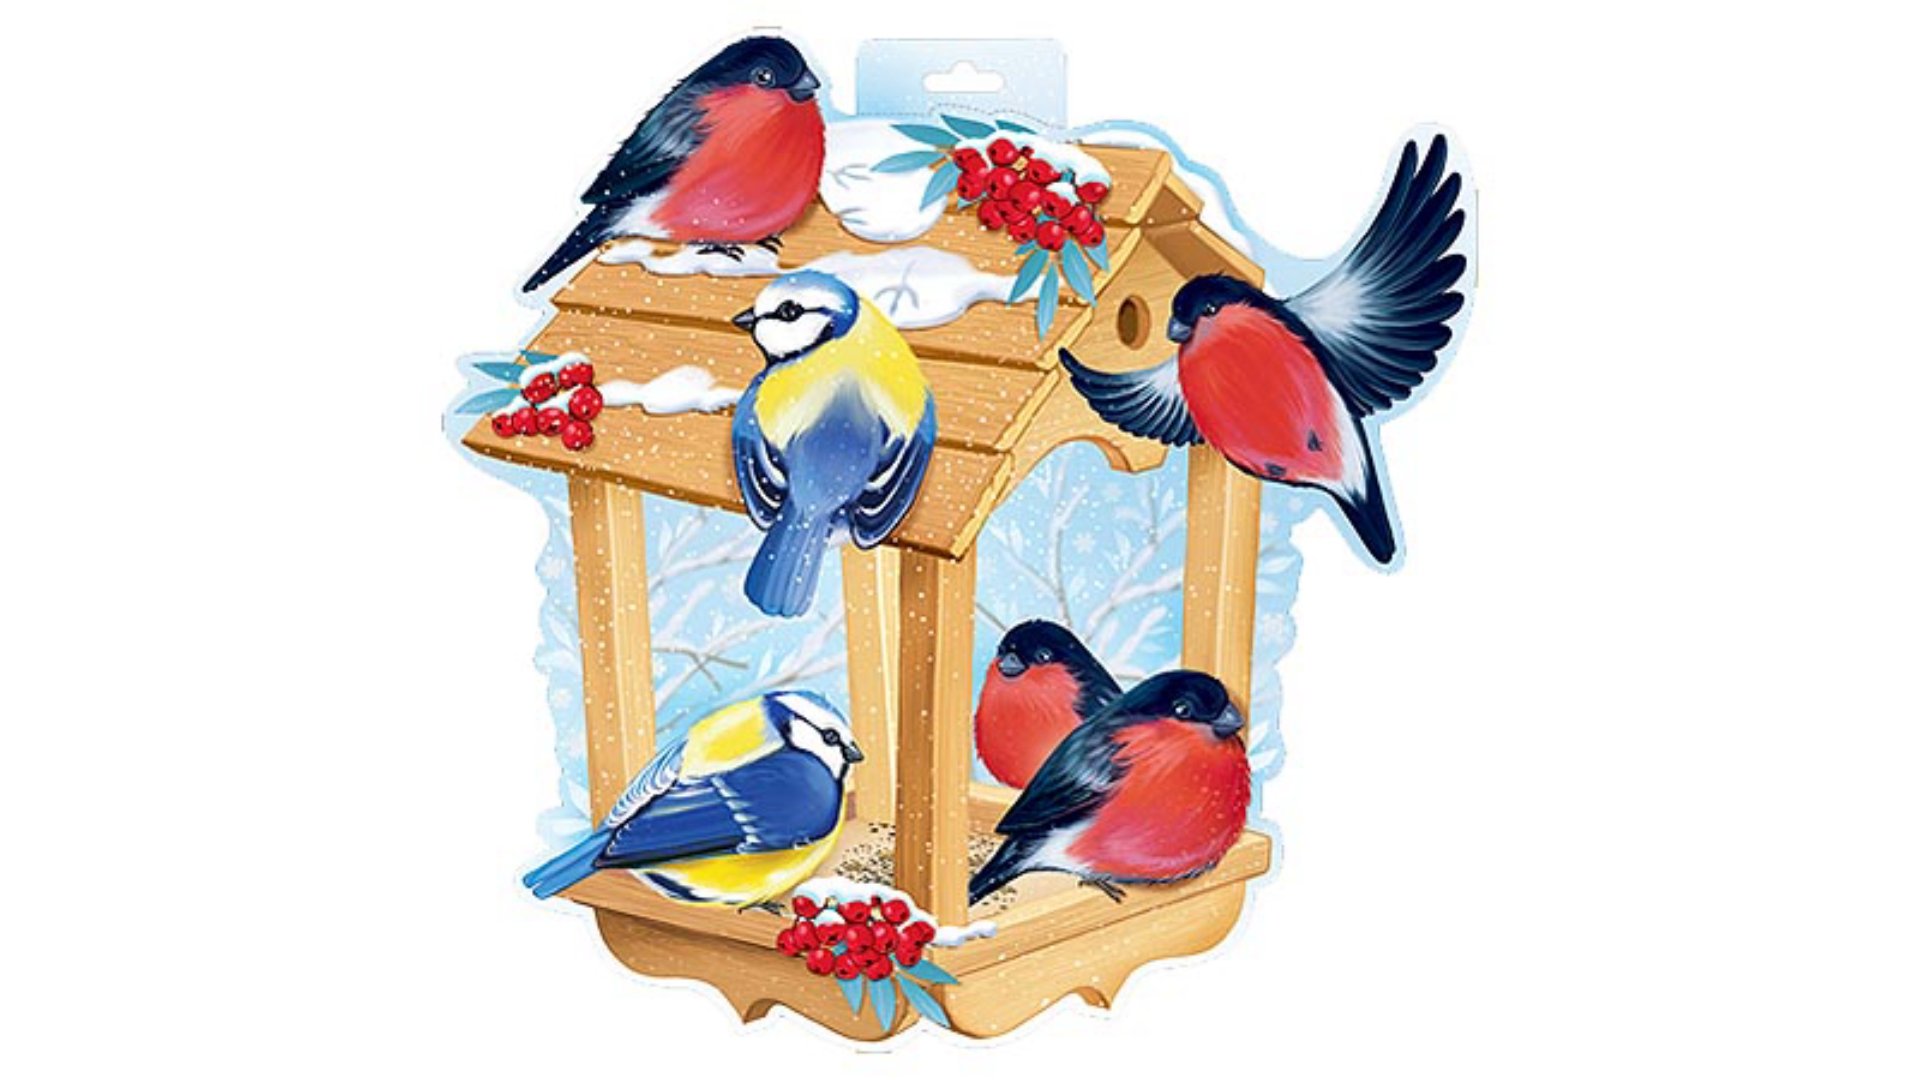 Картинки покормите птиц зимой для дошкольников